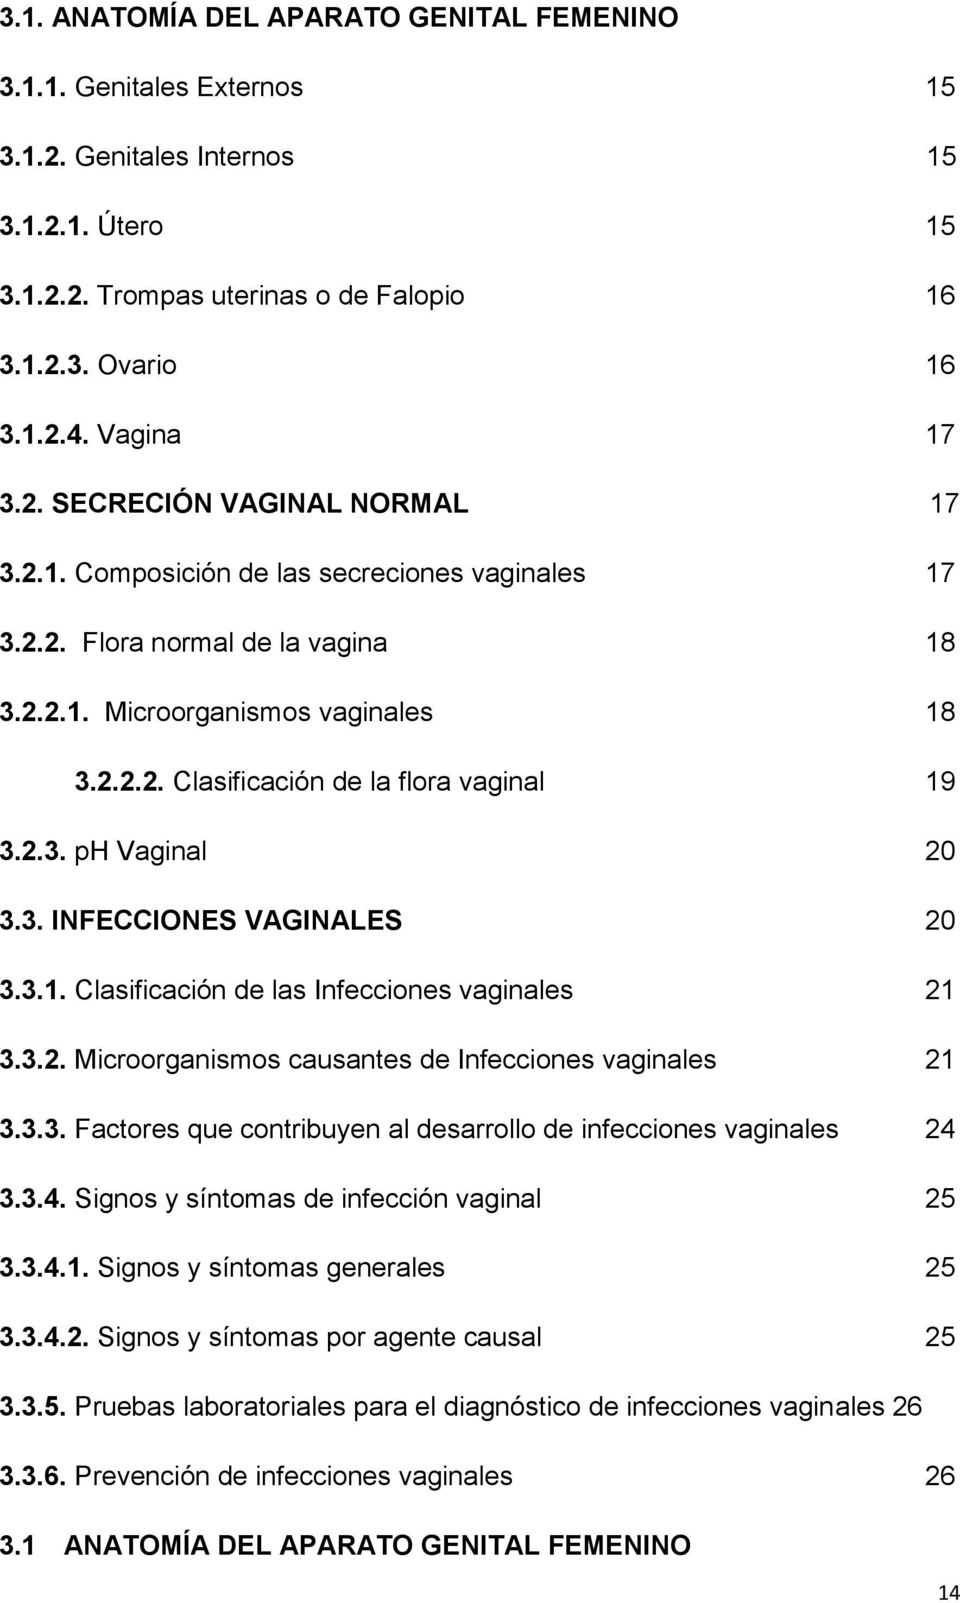 2.3. ph Vaginal 20 3.3. INFECCIONES VAGINALES 20 3.3.1. Clasificación de las Infecciones vaginales 21 3.3.2. Microorganismos causantes de Infecciones vaginales 21 3.3.3. Factores que contribuyen al desarrollo de infecciones vaginales 24 3.